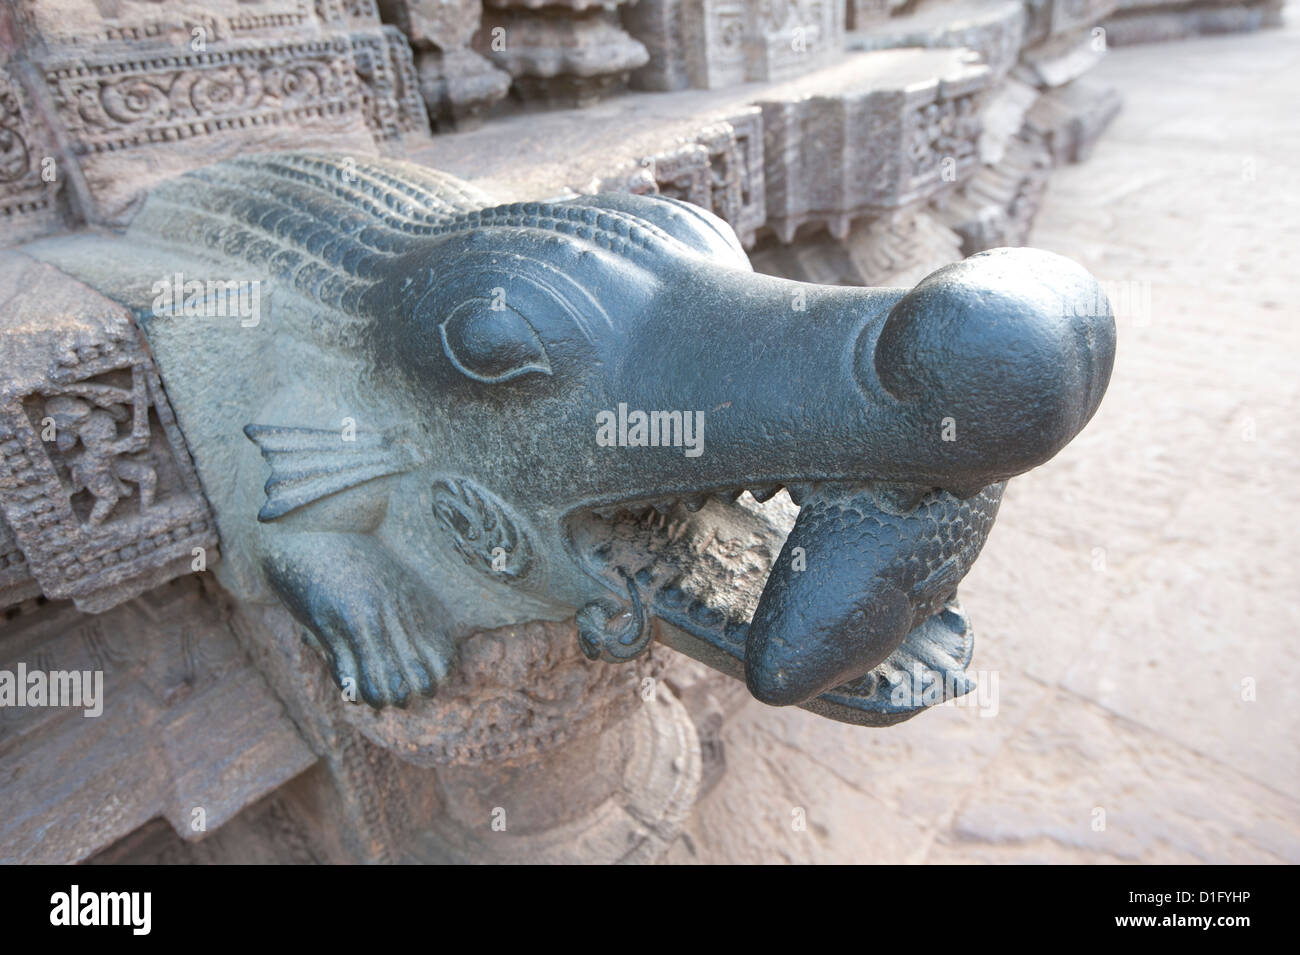 Tenant un poisson Crocodile, sculptés dans la pierre verte, temple du soleil de Konarak détail, Konarak, Orissa, Inde, Asie Banque D'Images